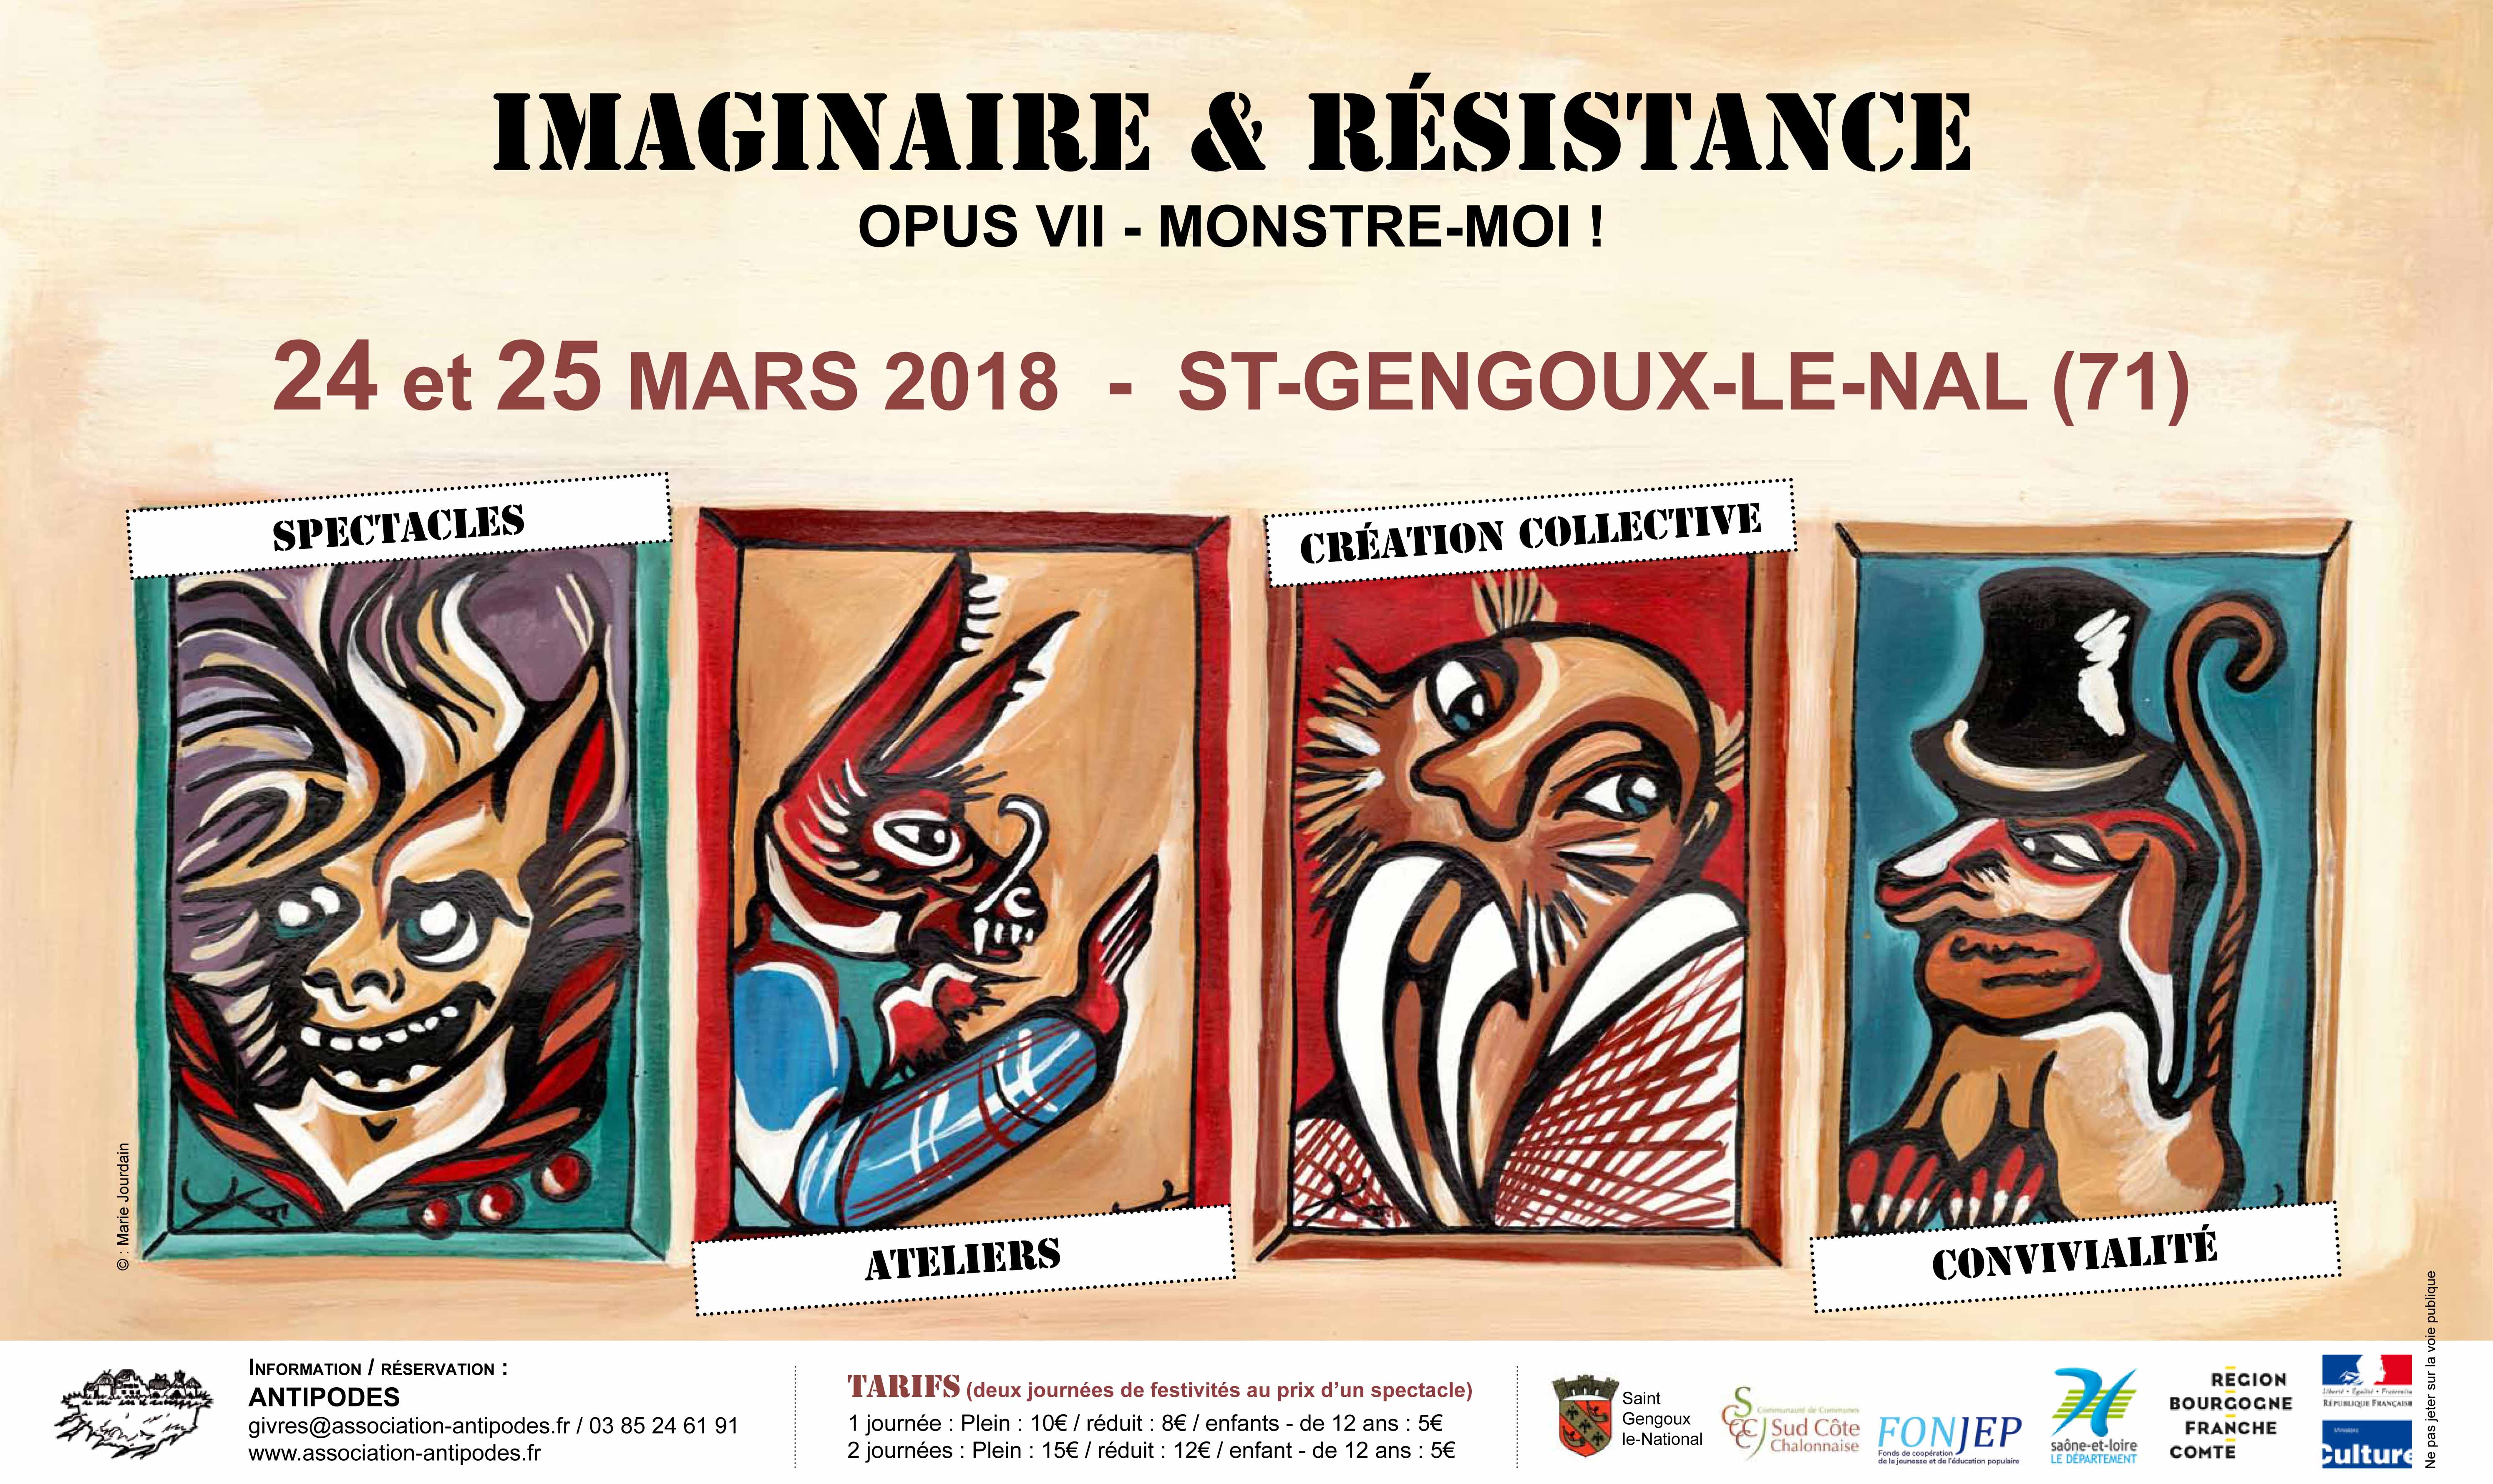 Imaginaire & Résistance